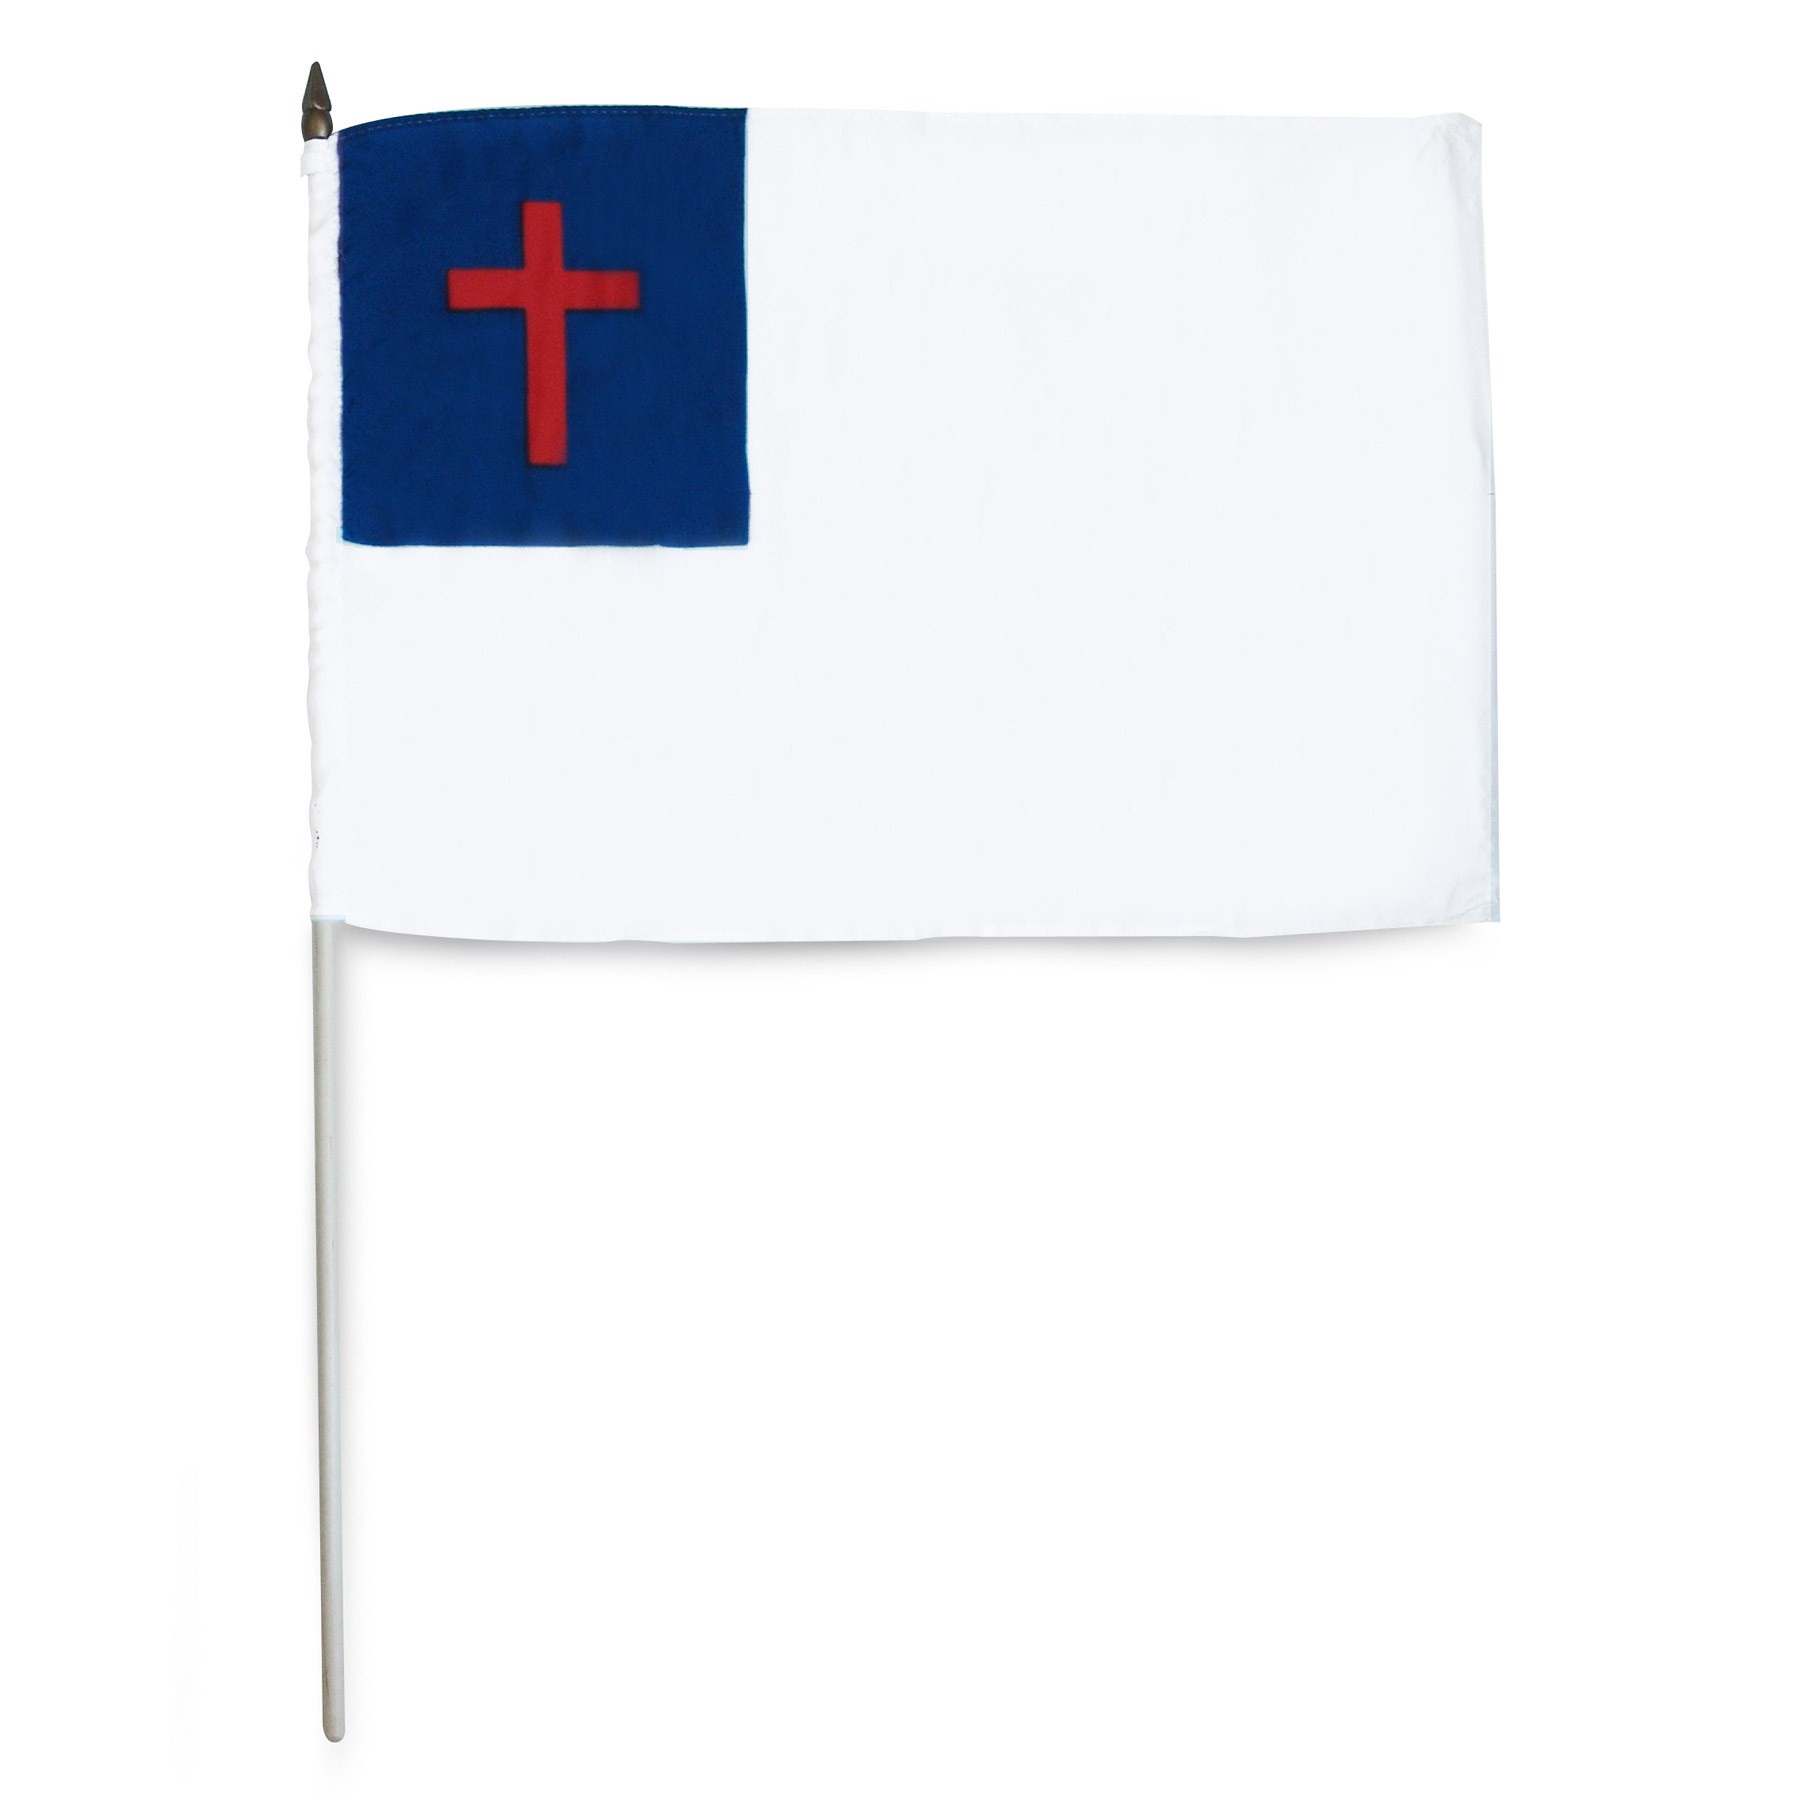 Christian Flag Printable - Printable Templates